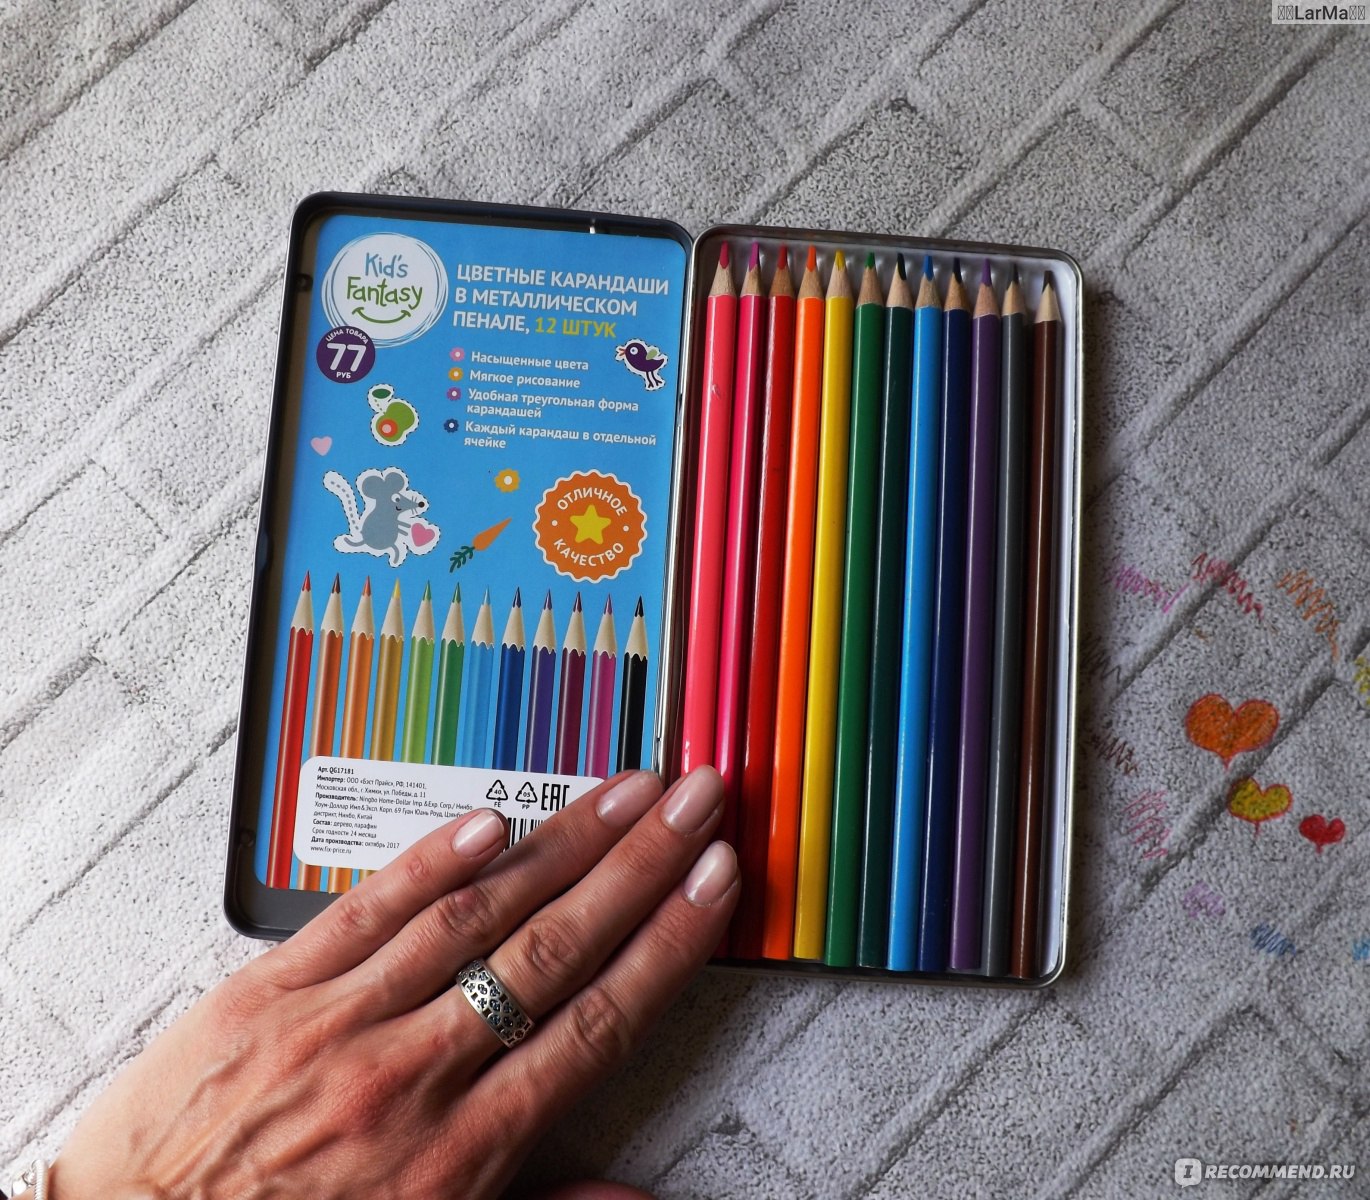 Kids Fantasy набор цветных карандашей в металлическом пенале 30